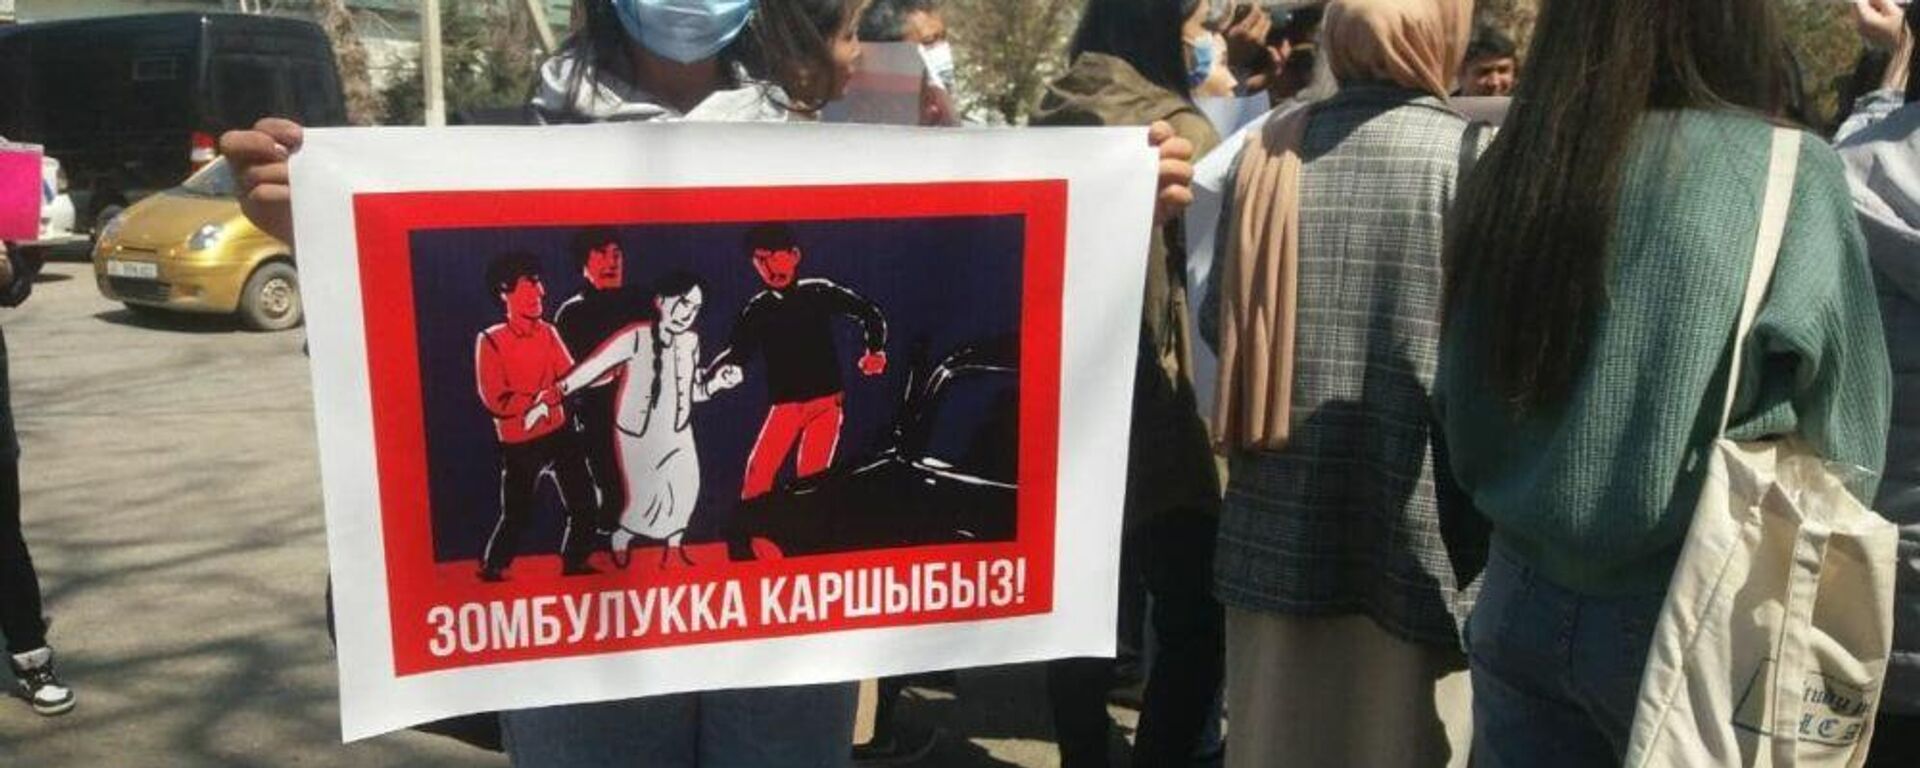 Митинг против насильственного принуждения женщин к браку проходит в Бишкеке - Sputnik Ўзбекистон, 1920, 08.04.2021